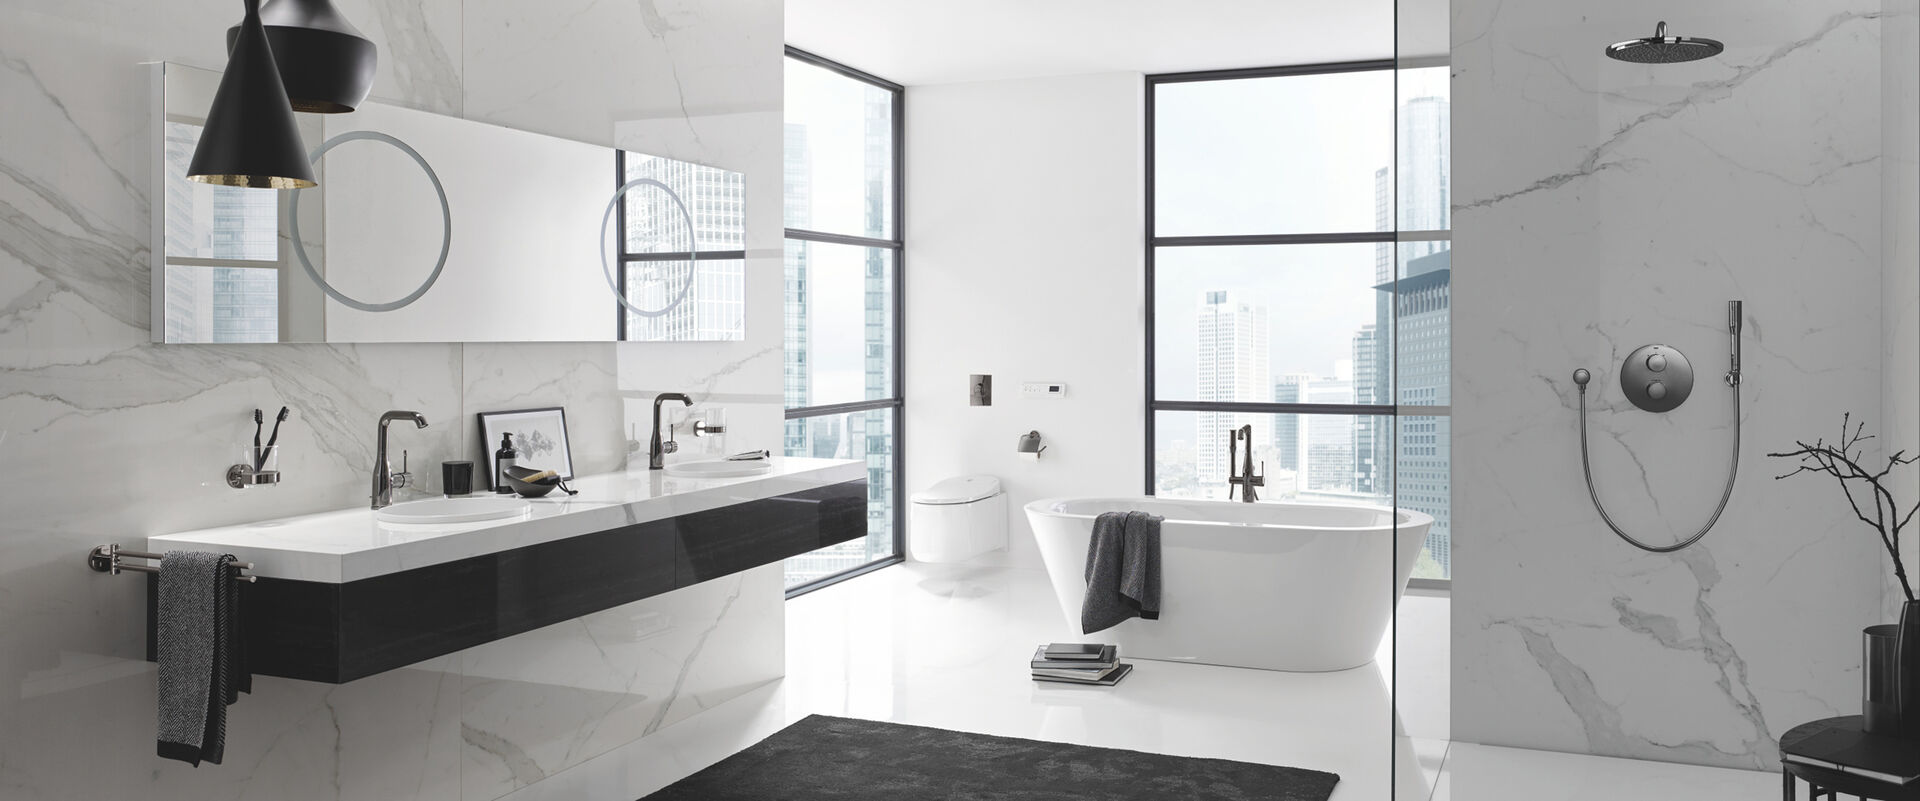 Helles Badezimmer mit Grohe Essence Colours, die an Waschbecken, Badewanne und Dusche installiert sind. Über dem Waschbeckenelement hängen Spiegel.